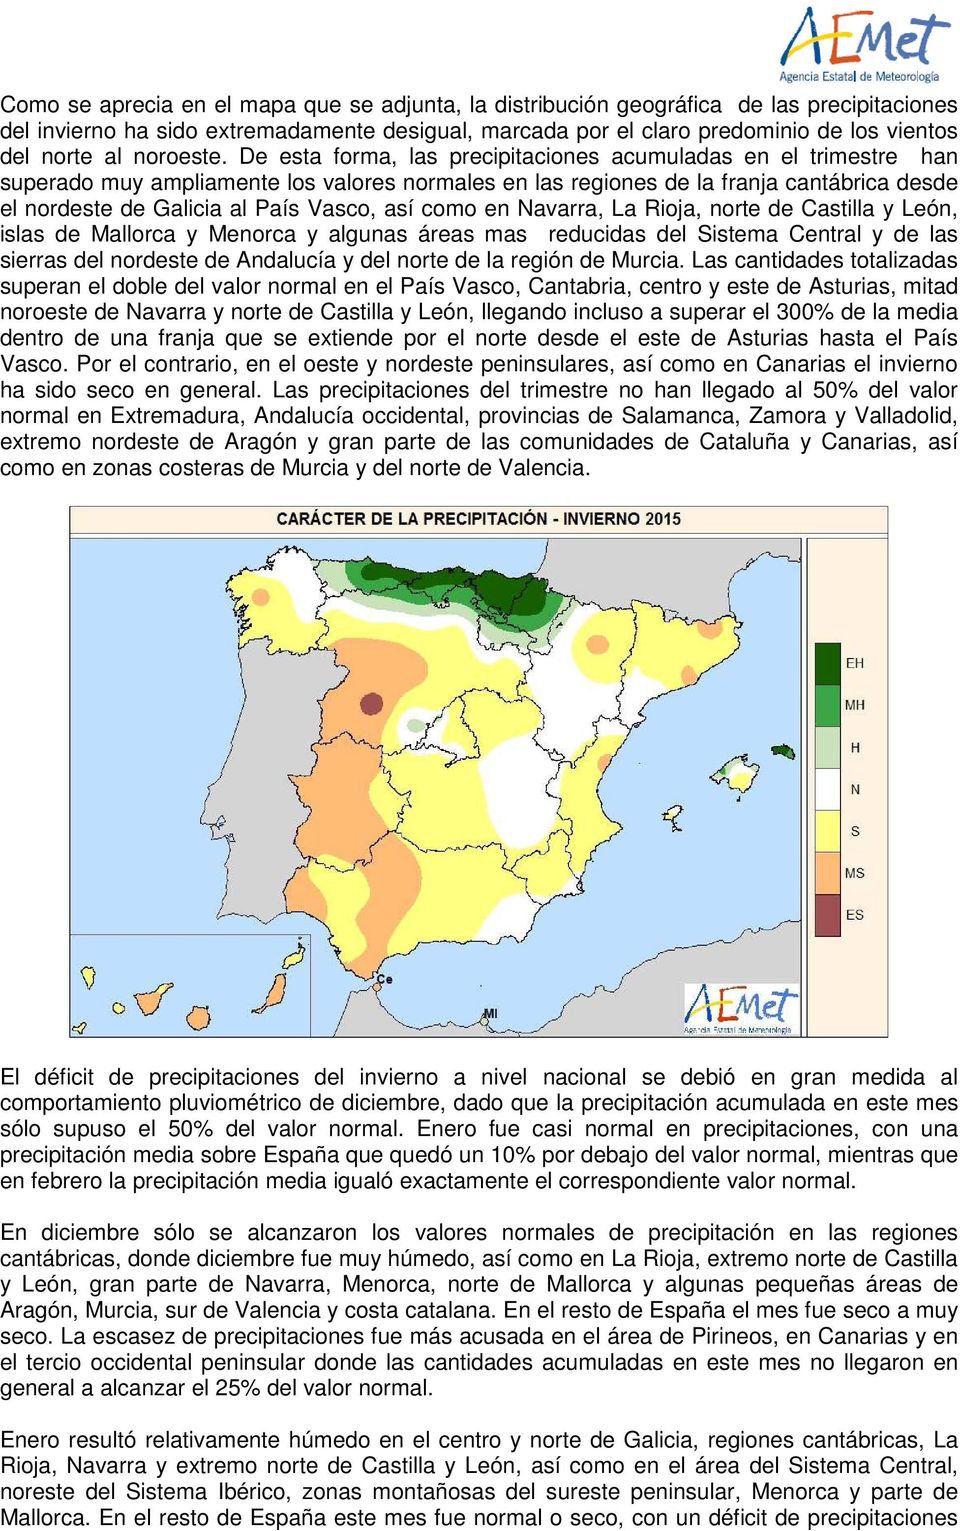 De esta forma, las precipitaciones acumuladas en el trimestre han superado muy ampliamente los valores normales en las regiones de la franja cantábrica desde el nordeste de Galicia al País Vasco, así